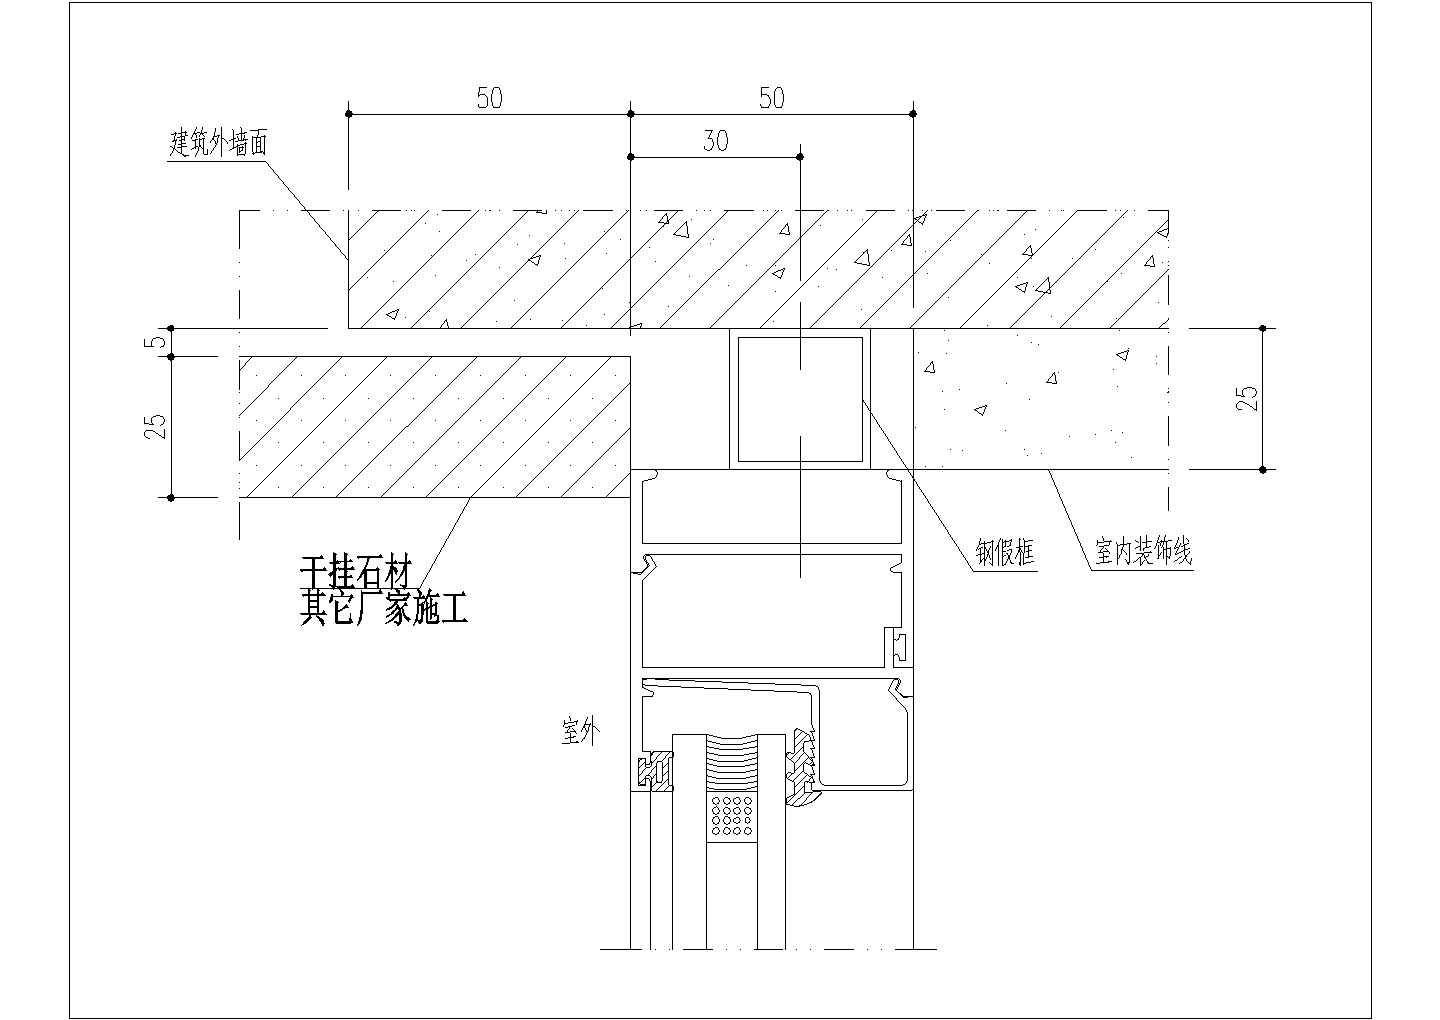 [施工电梯]车库顶板肋梁预留施工电梯洞口 - 土木在线